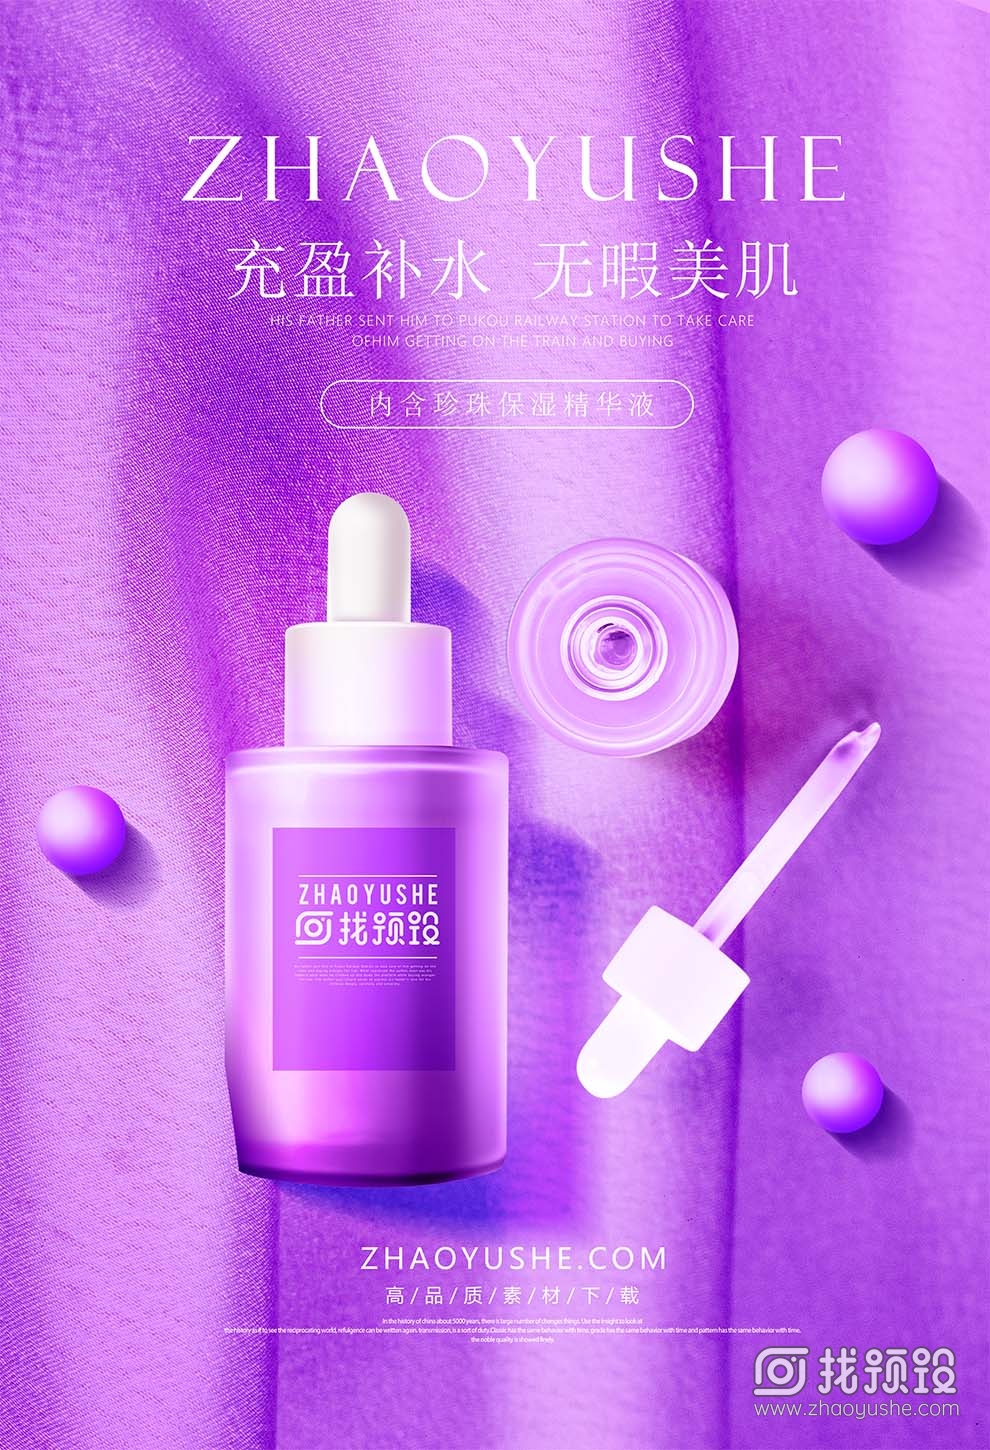 找预设网紫色化妆品广告设计psd2023年4月1日 2023010719303968